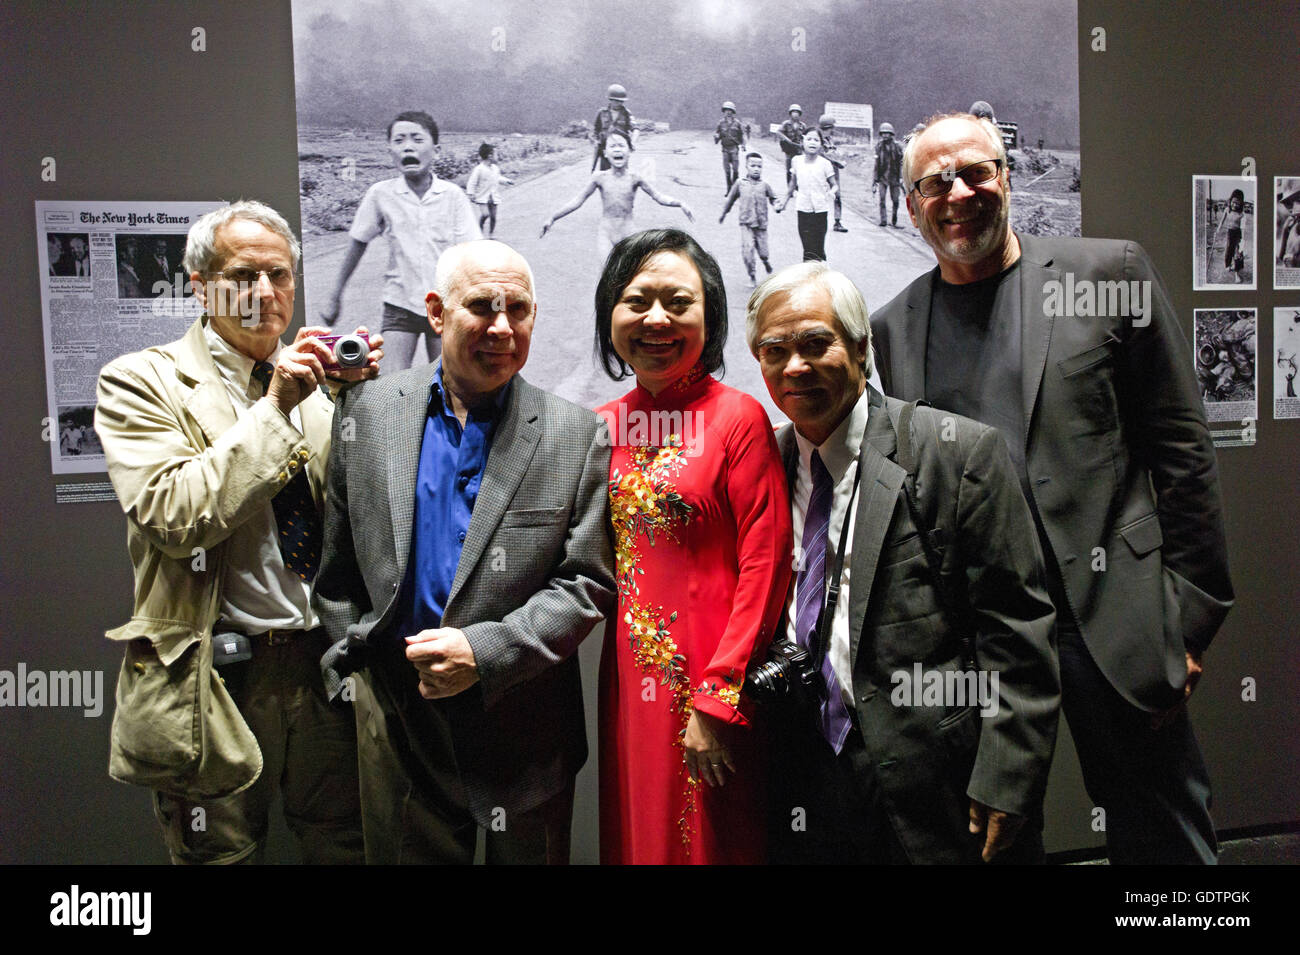 Burnett, McCurry, Kim Phuc, Nick Ut and Gorman Stock Photo